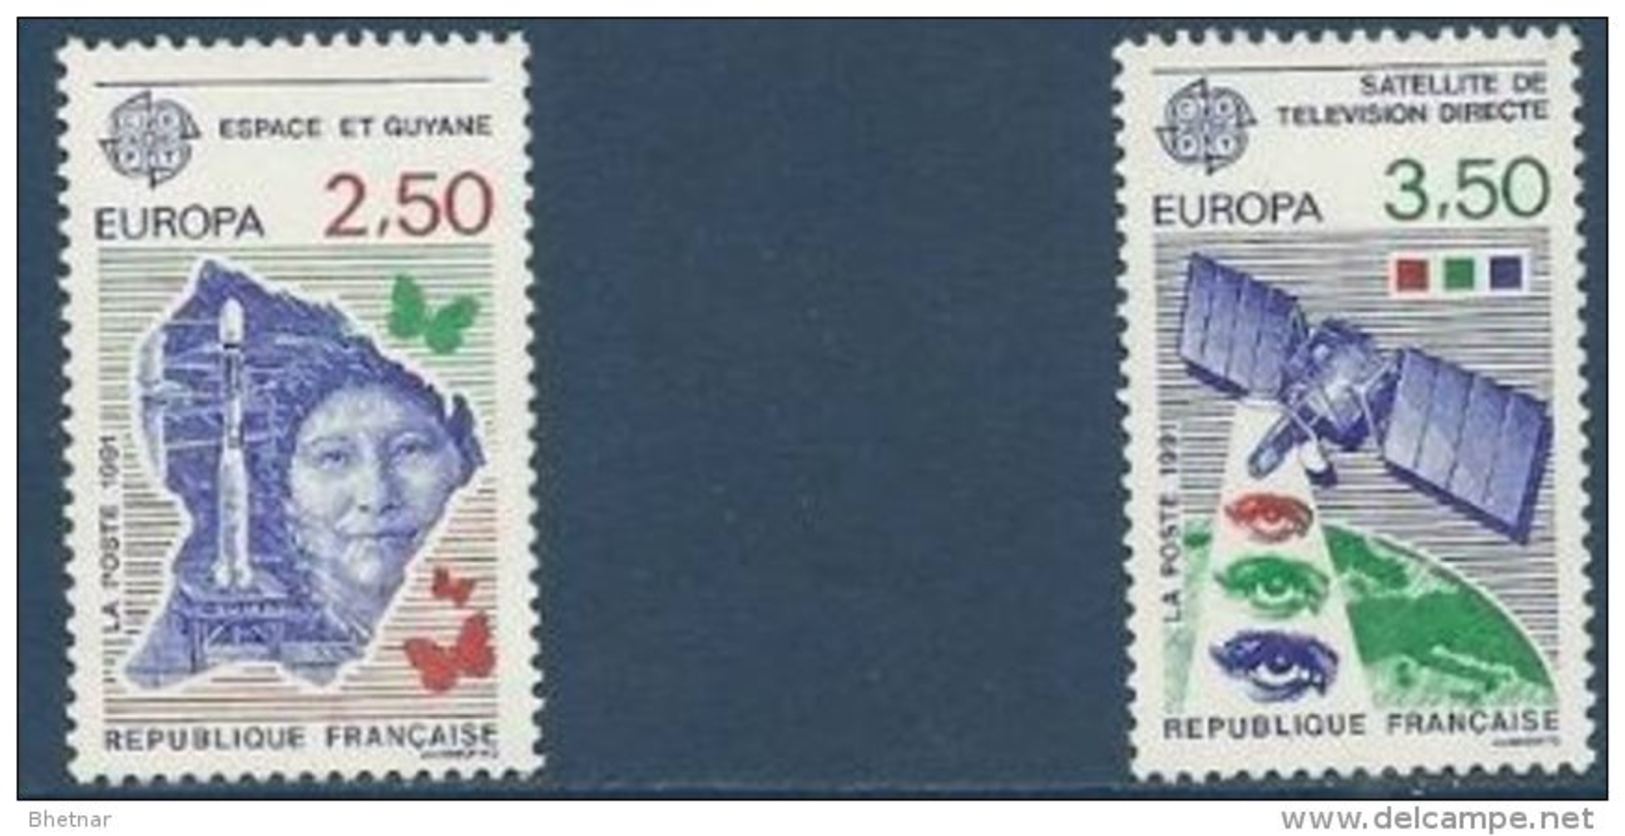 FR YT 2696 & 2697 " EUROPA " 1991 Neuf** - Neufs